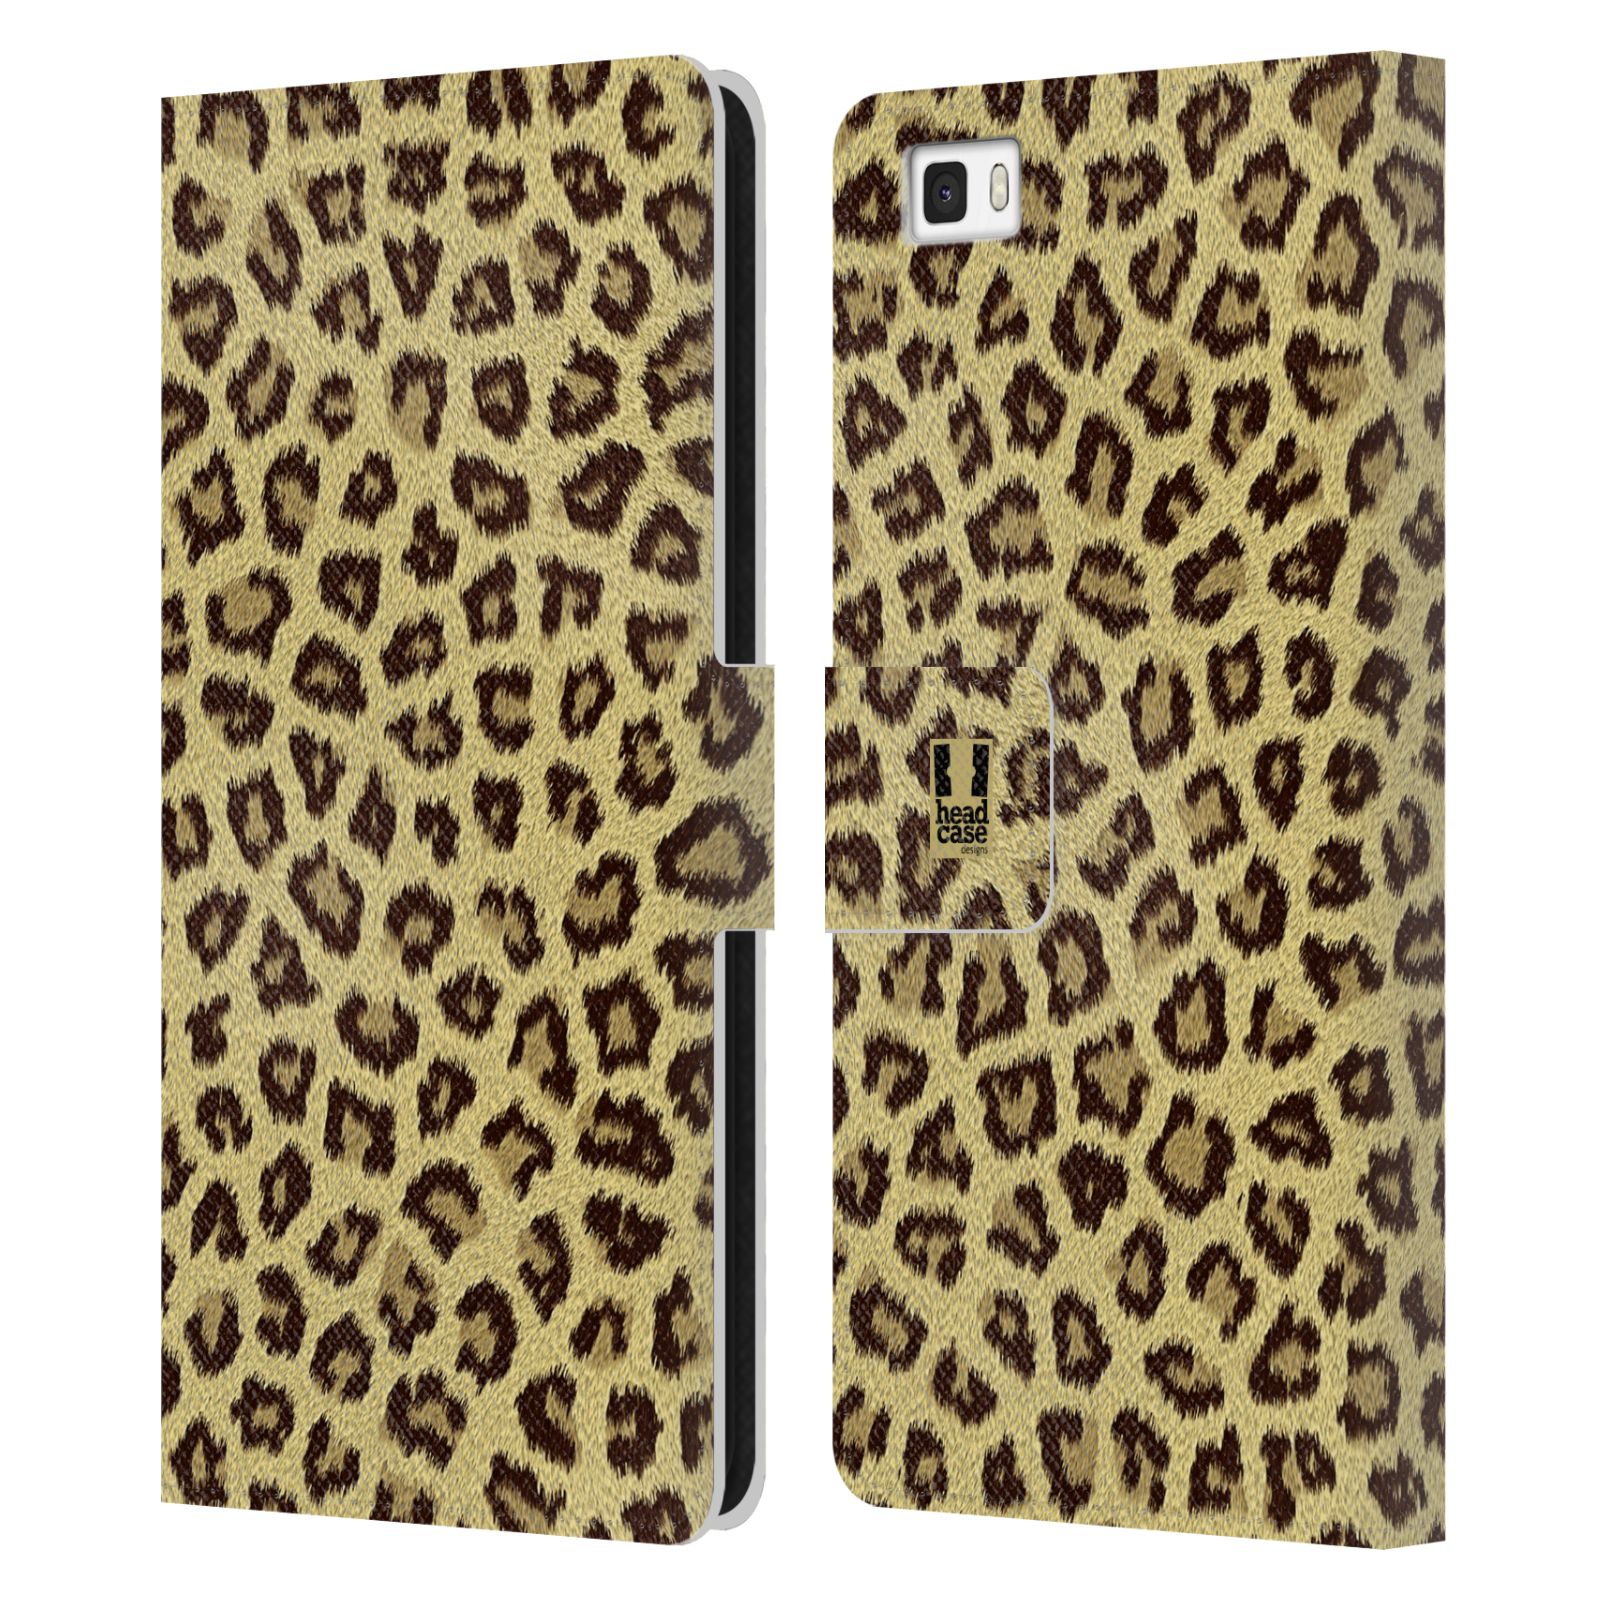 HEAD CASE Flipové pouzdro pro mobil Huawei P8 LITE zvíře srst divoká kolekce jaguár, gepard